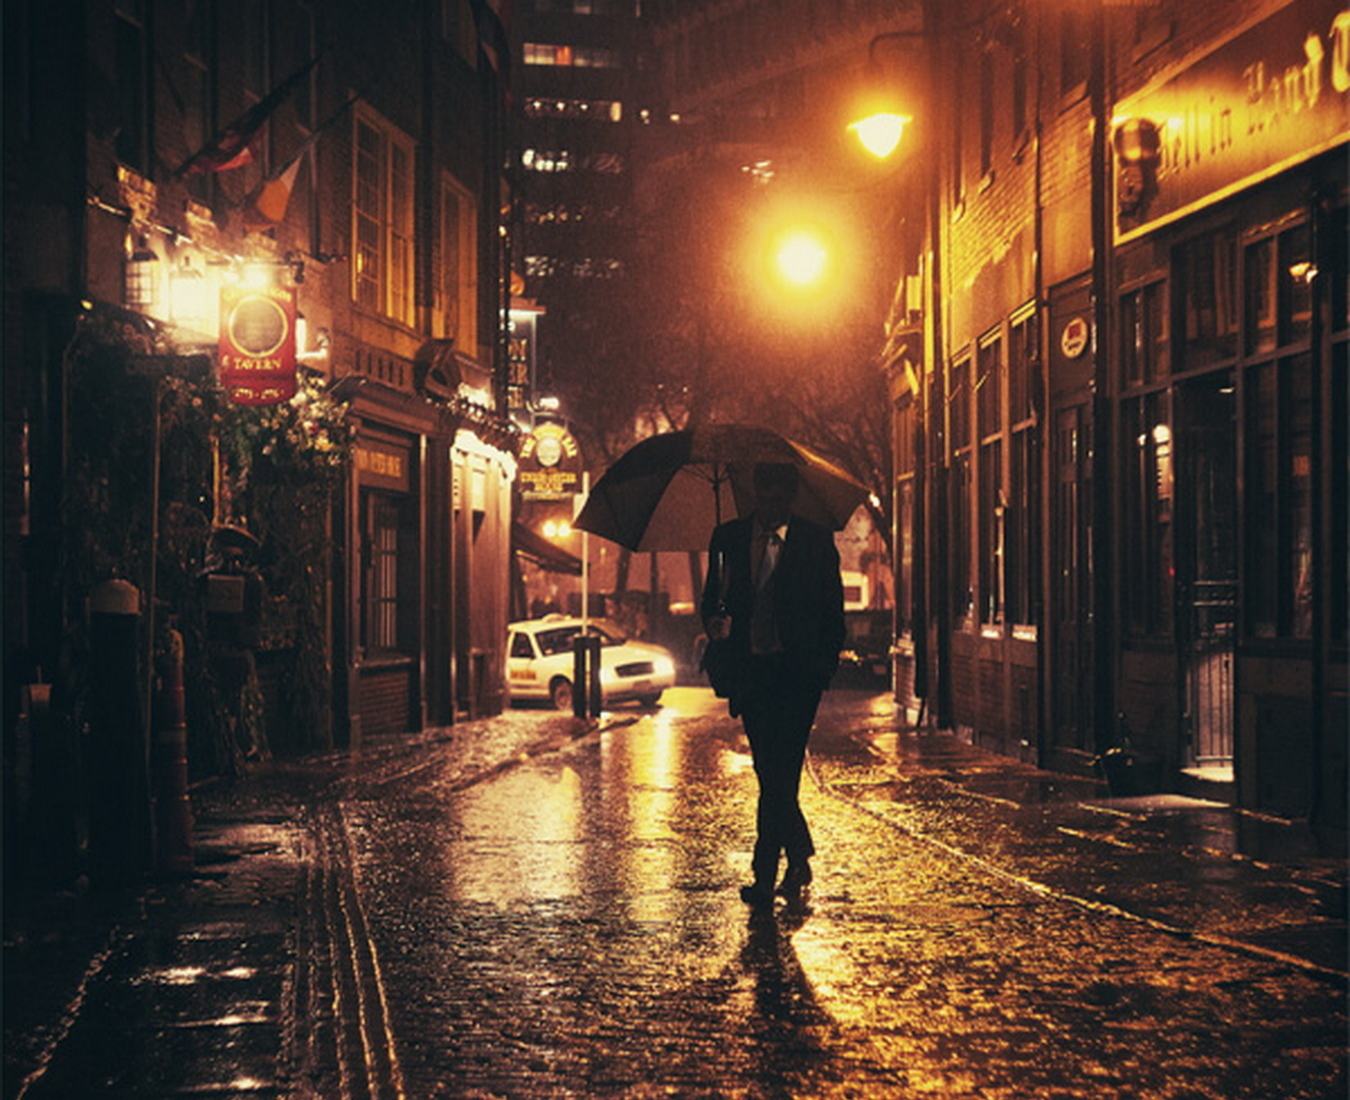 Гулять на улице вечером. Люди на улице вечером. "Дождливый вечер". Парень идет по улице. Человек бредет по улице.